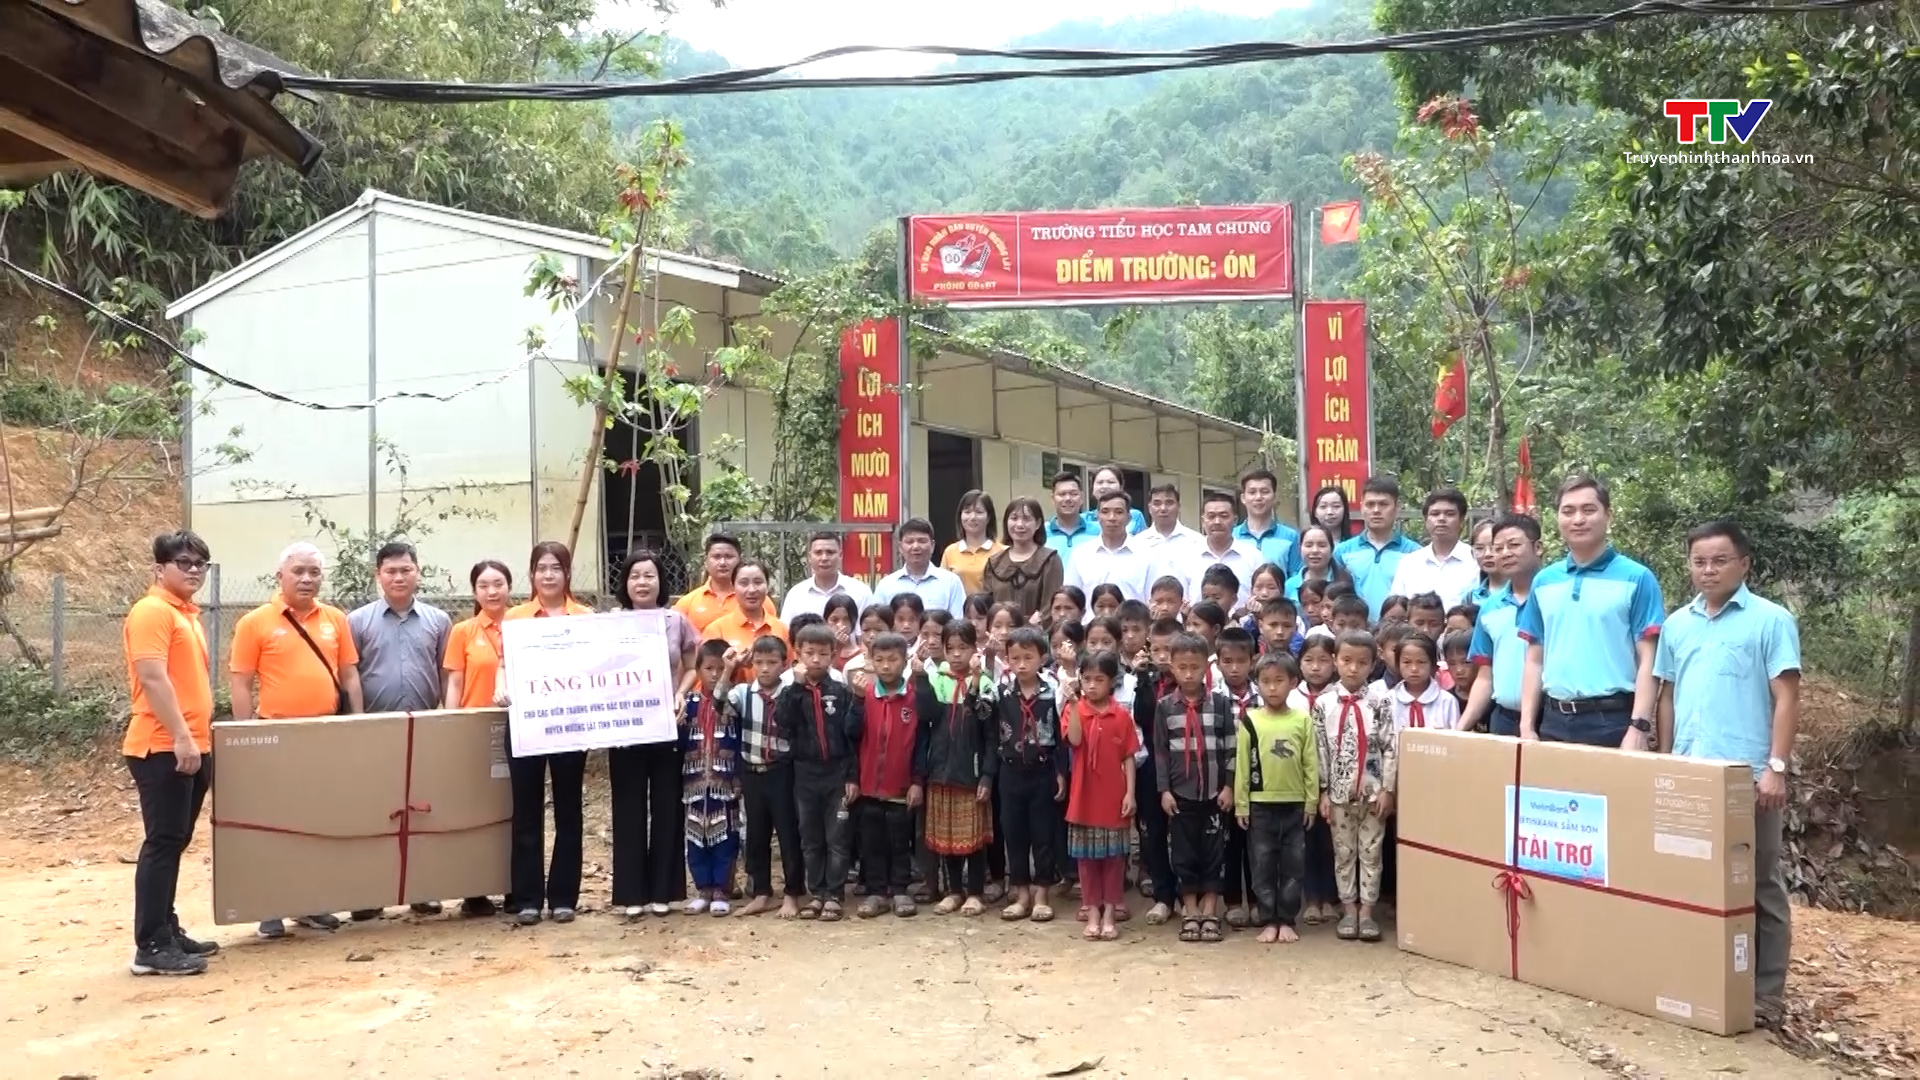 Trao tặng tivi cho các điểm trường khó khăn huyện Mường Lát- Ảnh 1.